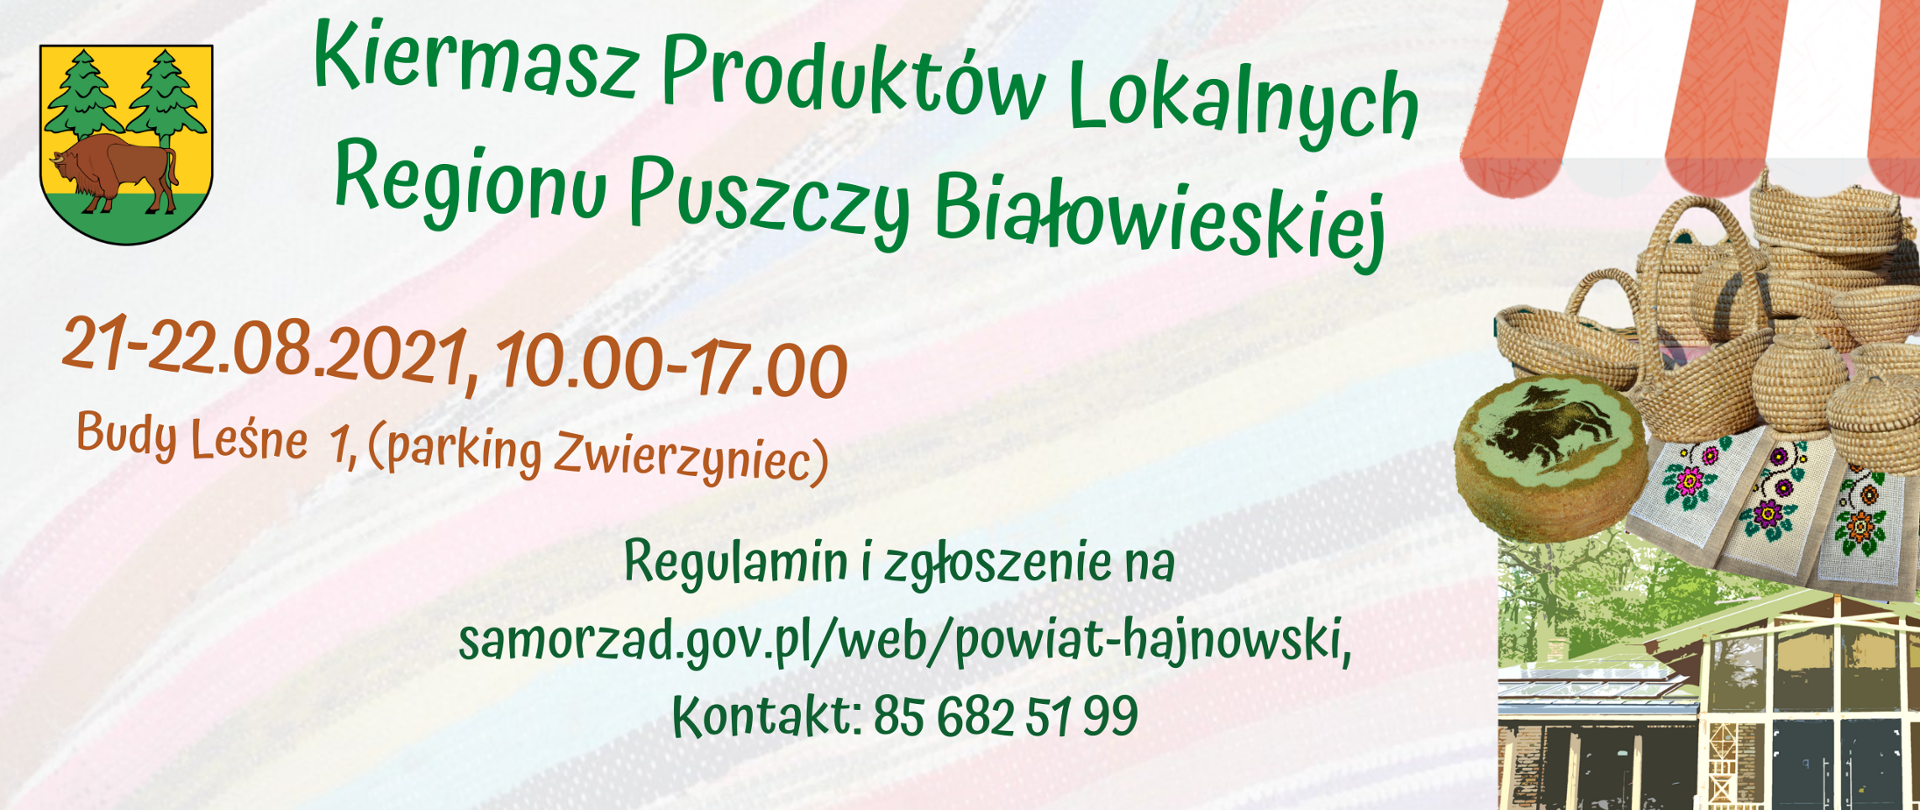 Kiermasz Produktów Lokalnych Regionu Puszczy Białowieskiej, 21-22.08.2021 10.00-17.00 Budy Leśne 1